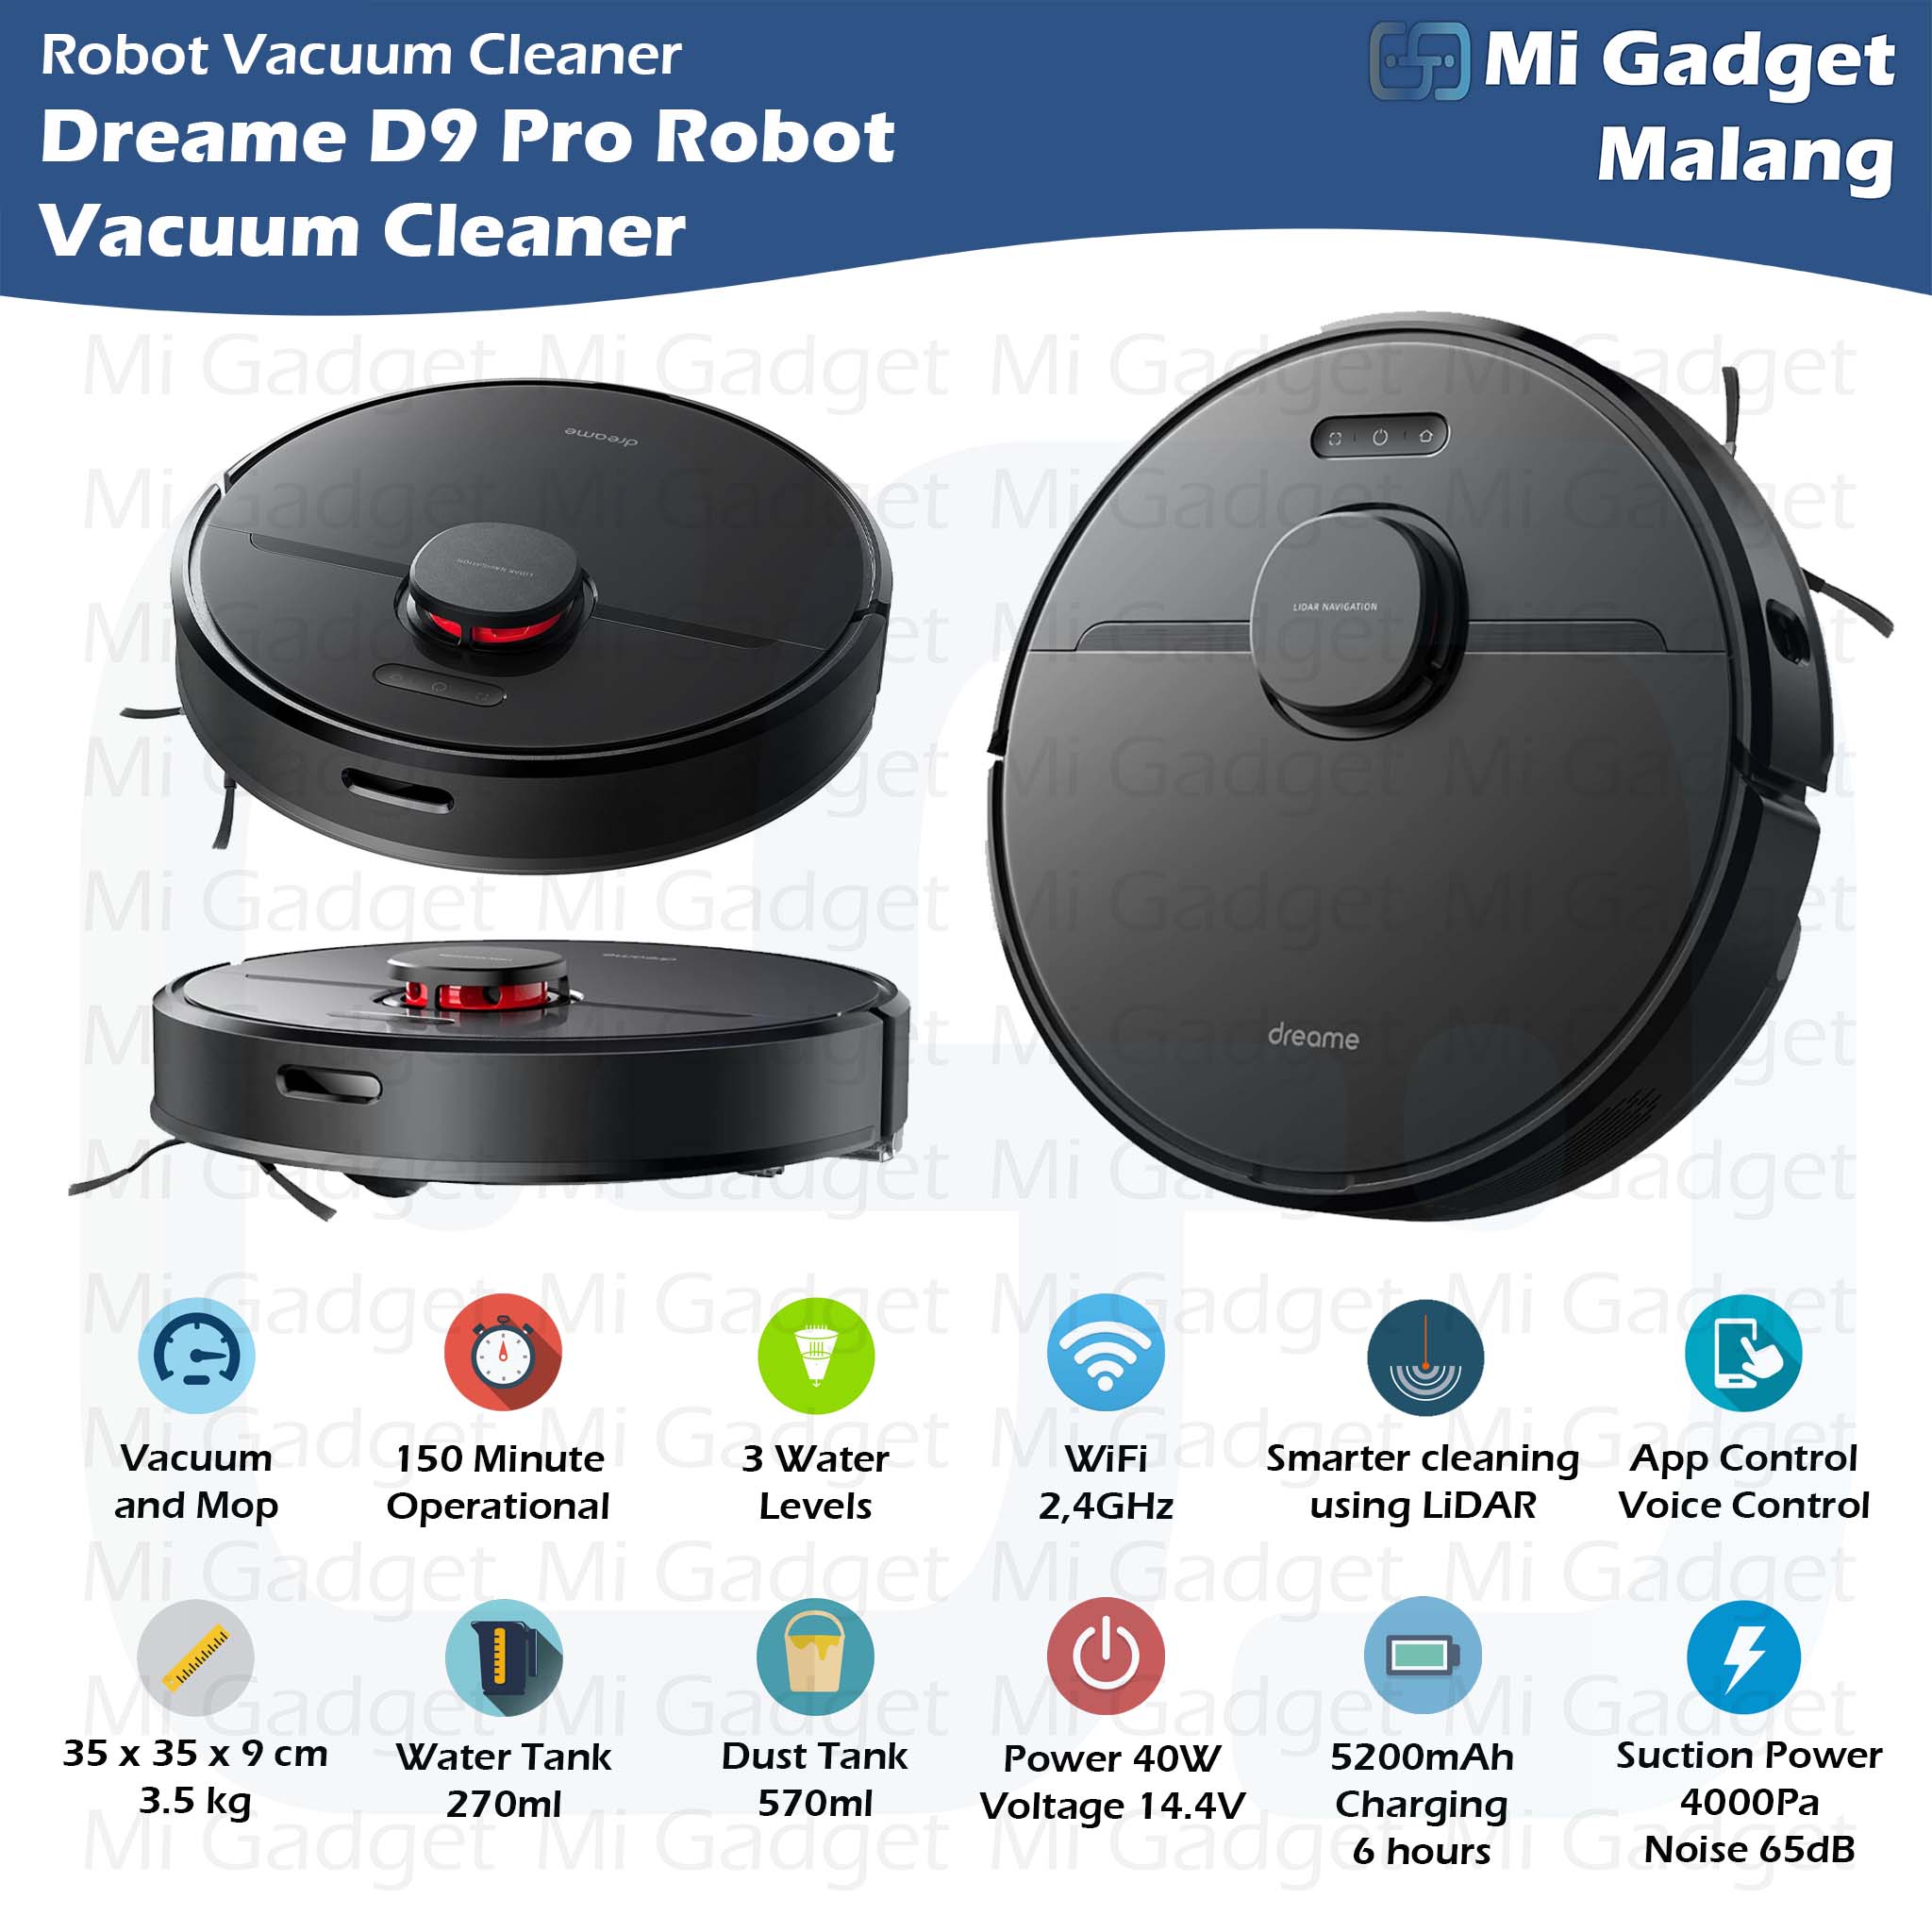 Dreame D9 Pro Robot Vacuum Cleaner and Mop - Mi Gadget Malang